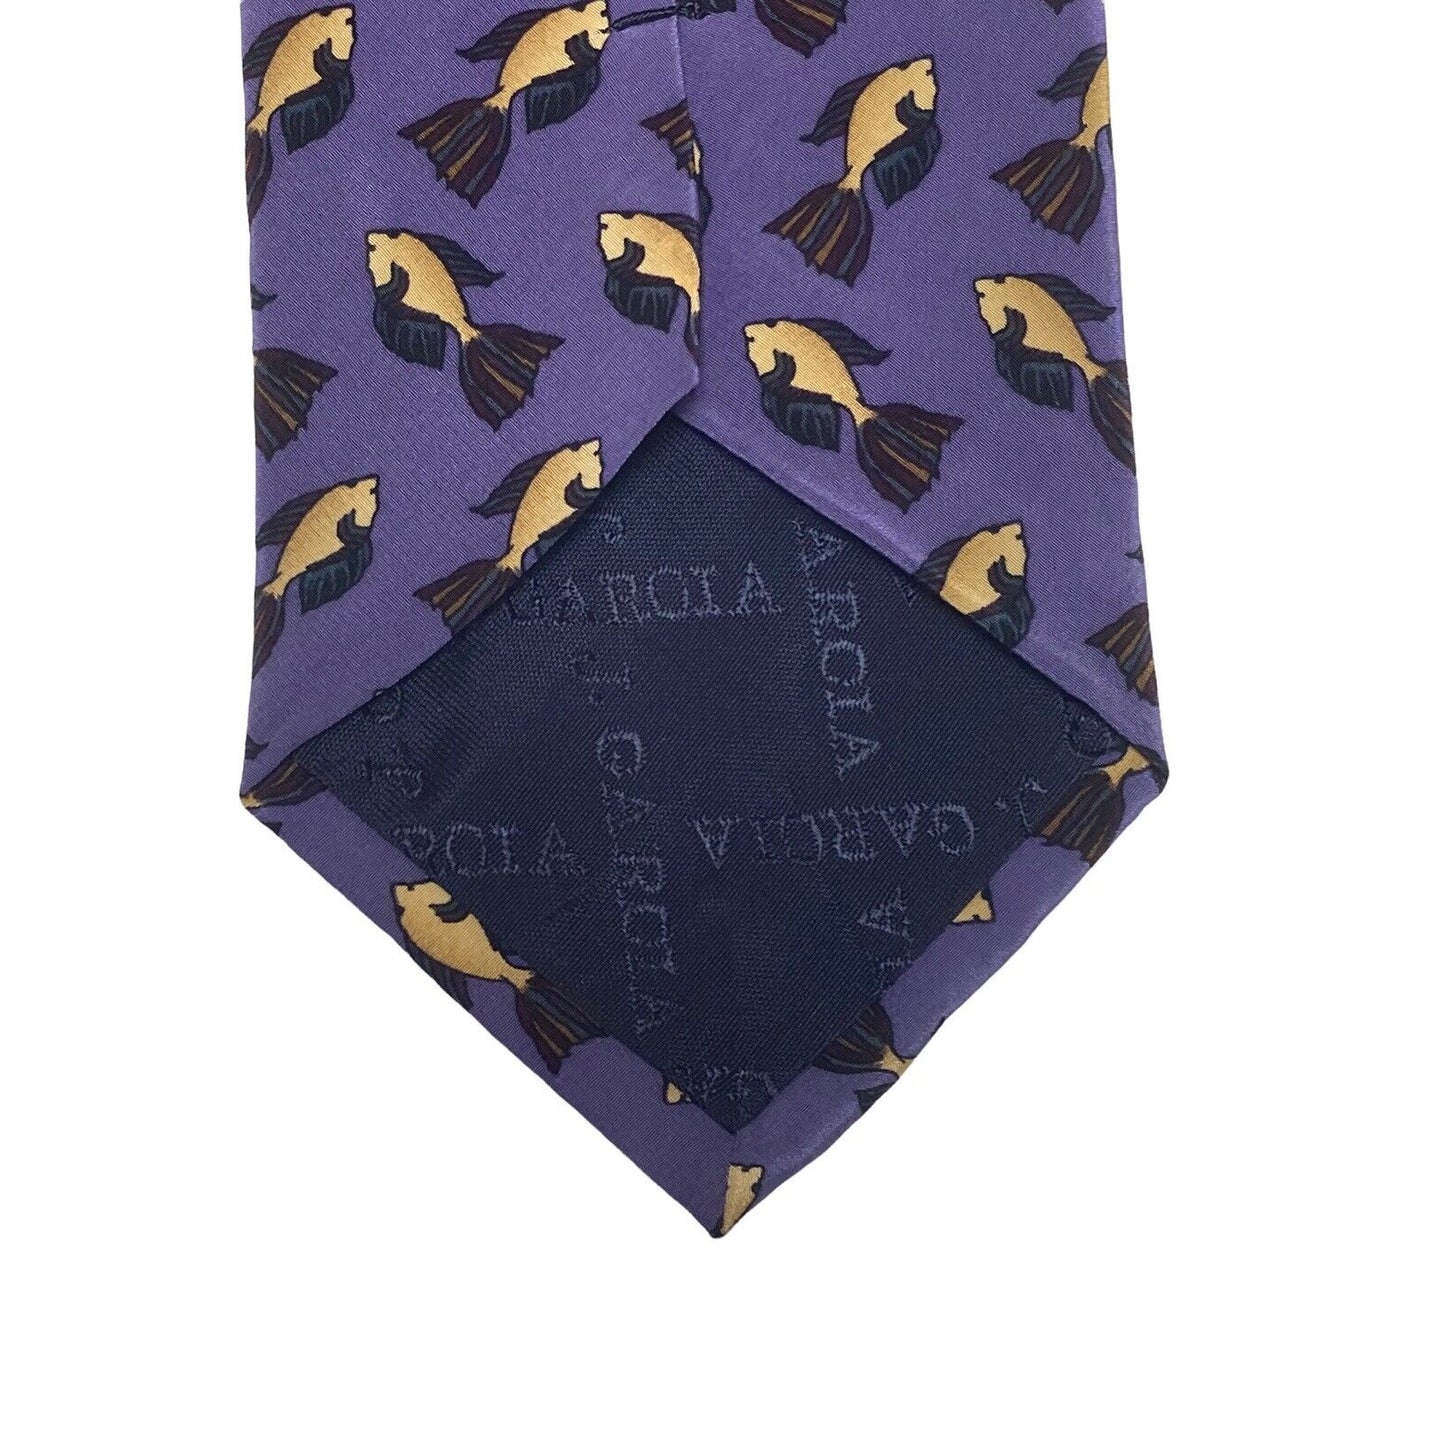 J Jerry Garcia Grateful Dead Fish Vintage Novelty Necktie 100% Silk Purple